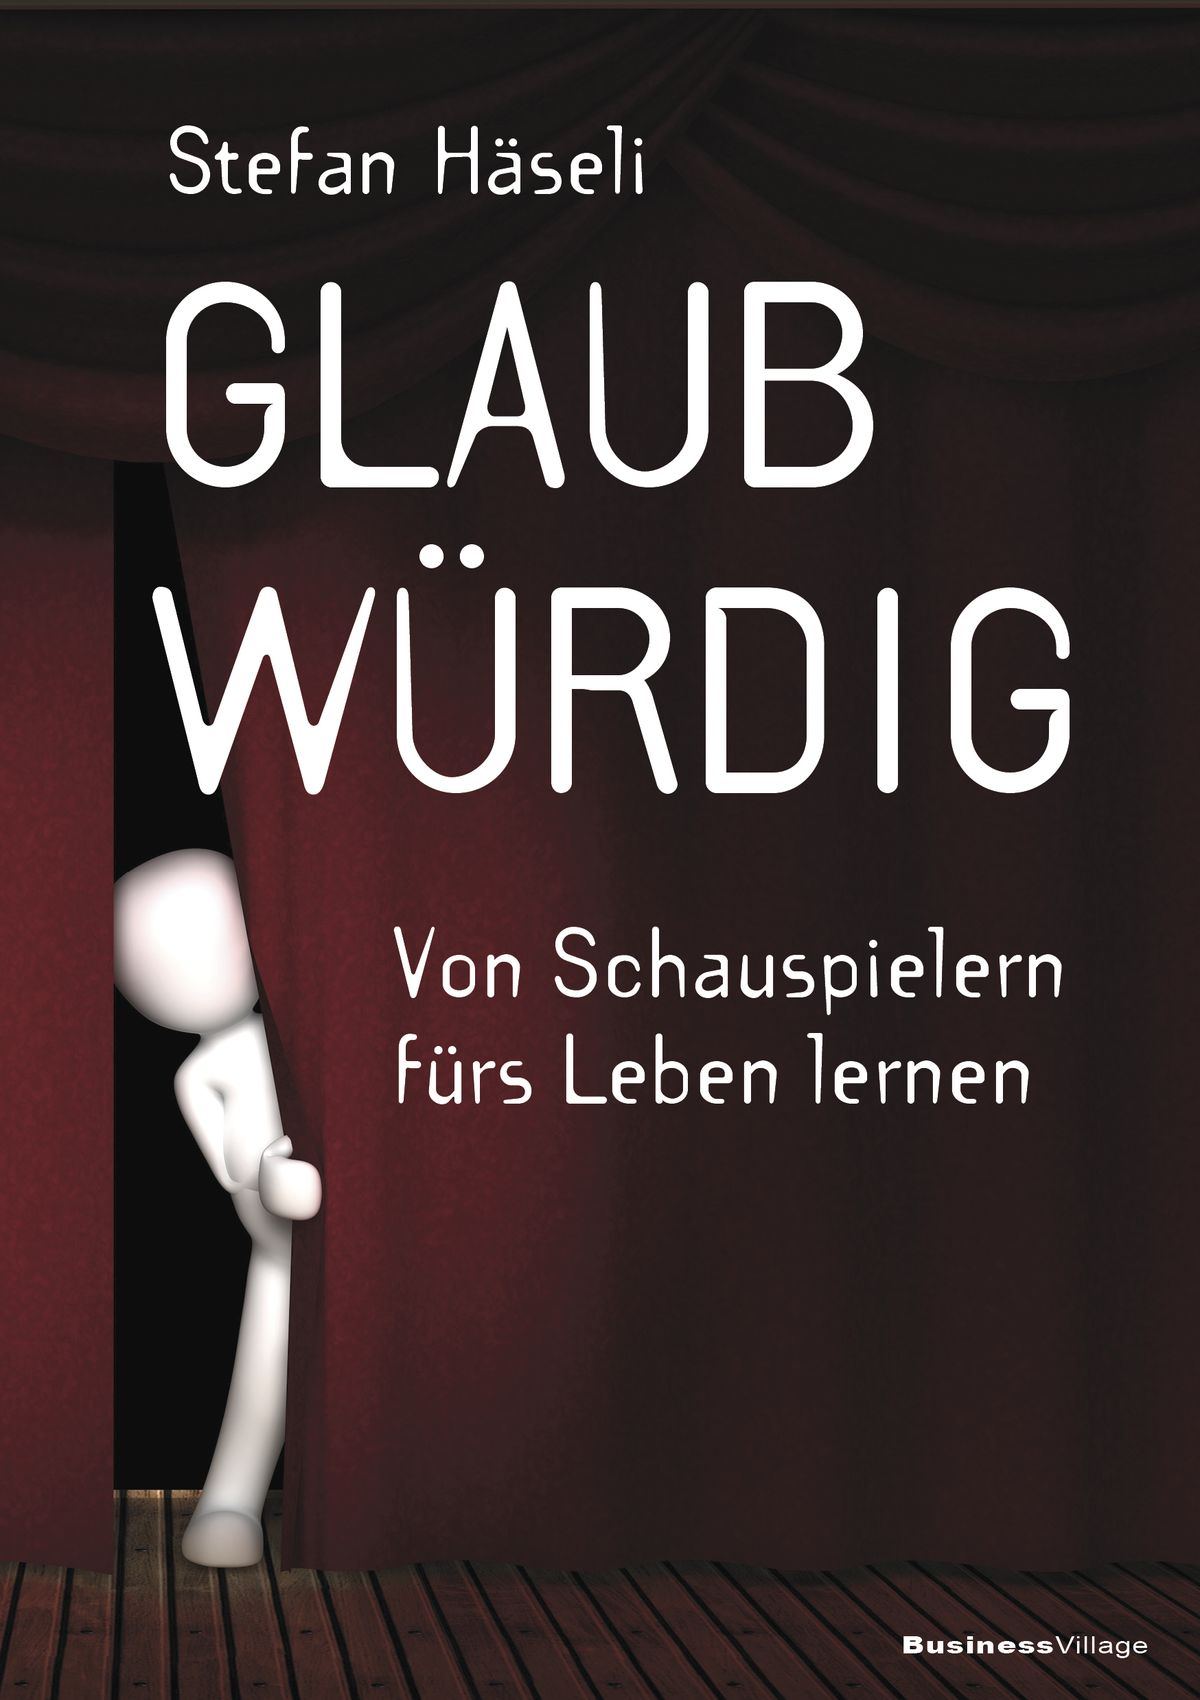 Stefan Häseli | "Glaubwürdig - Von Schauspielern fürs Leben lernen" 192 Seiten | 19,95 Euro  ISBN 978-3-86980-557-3